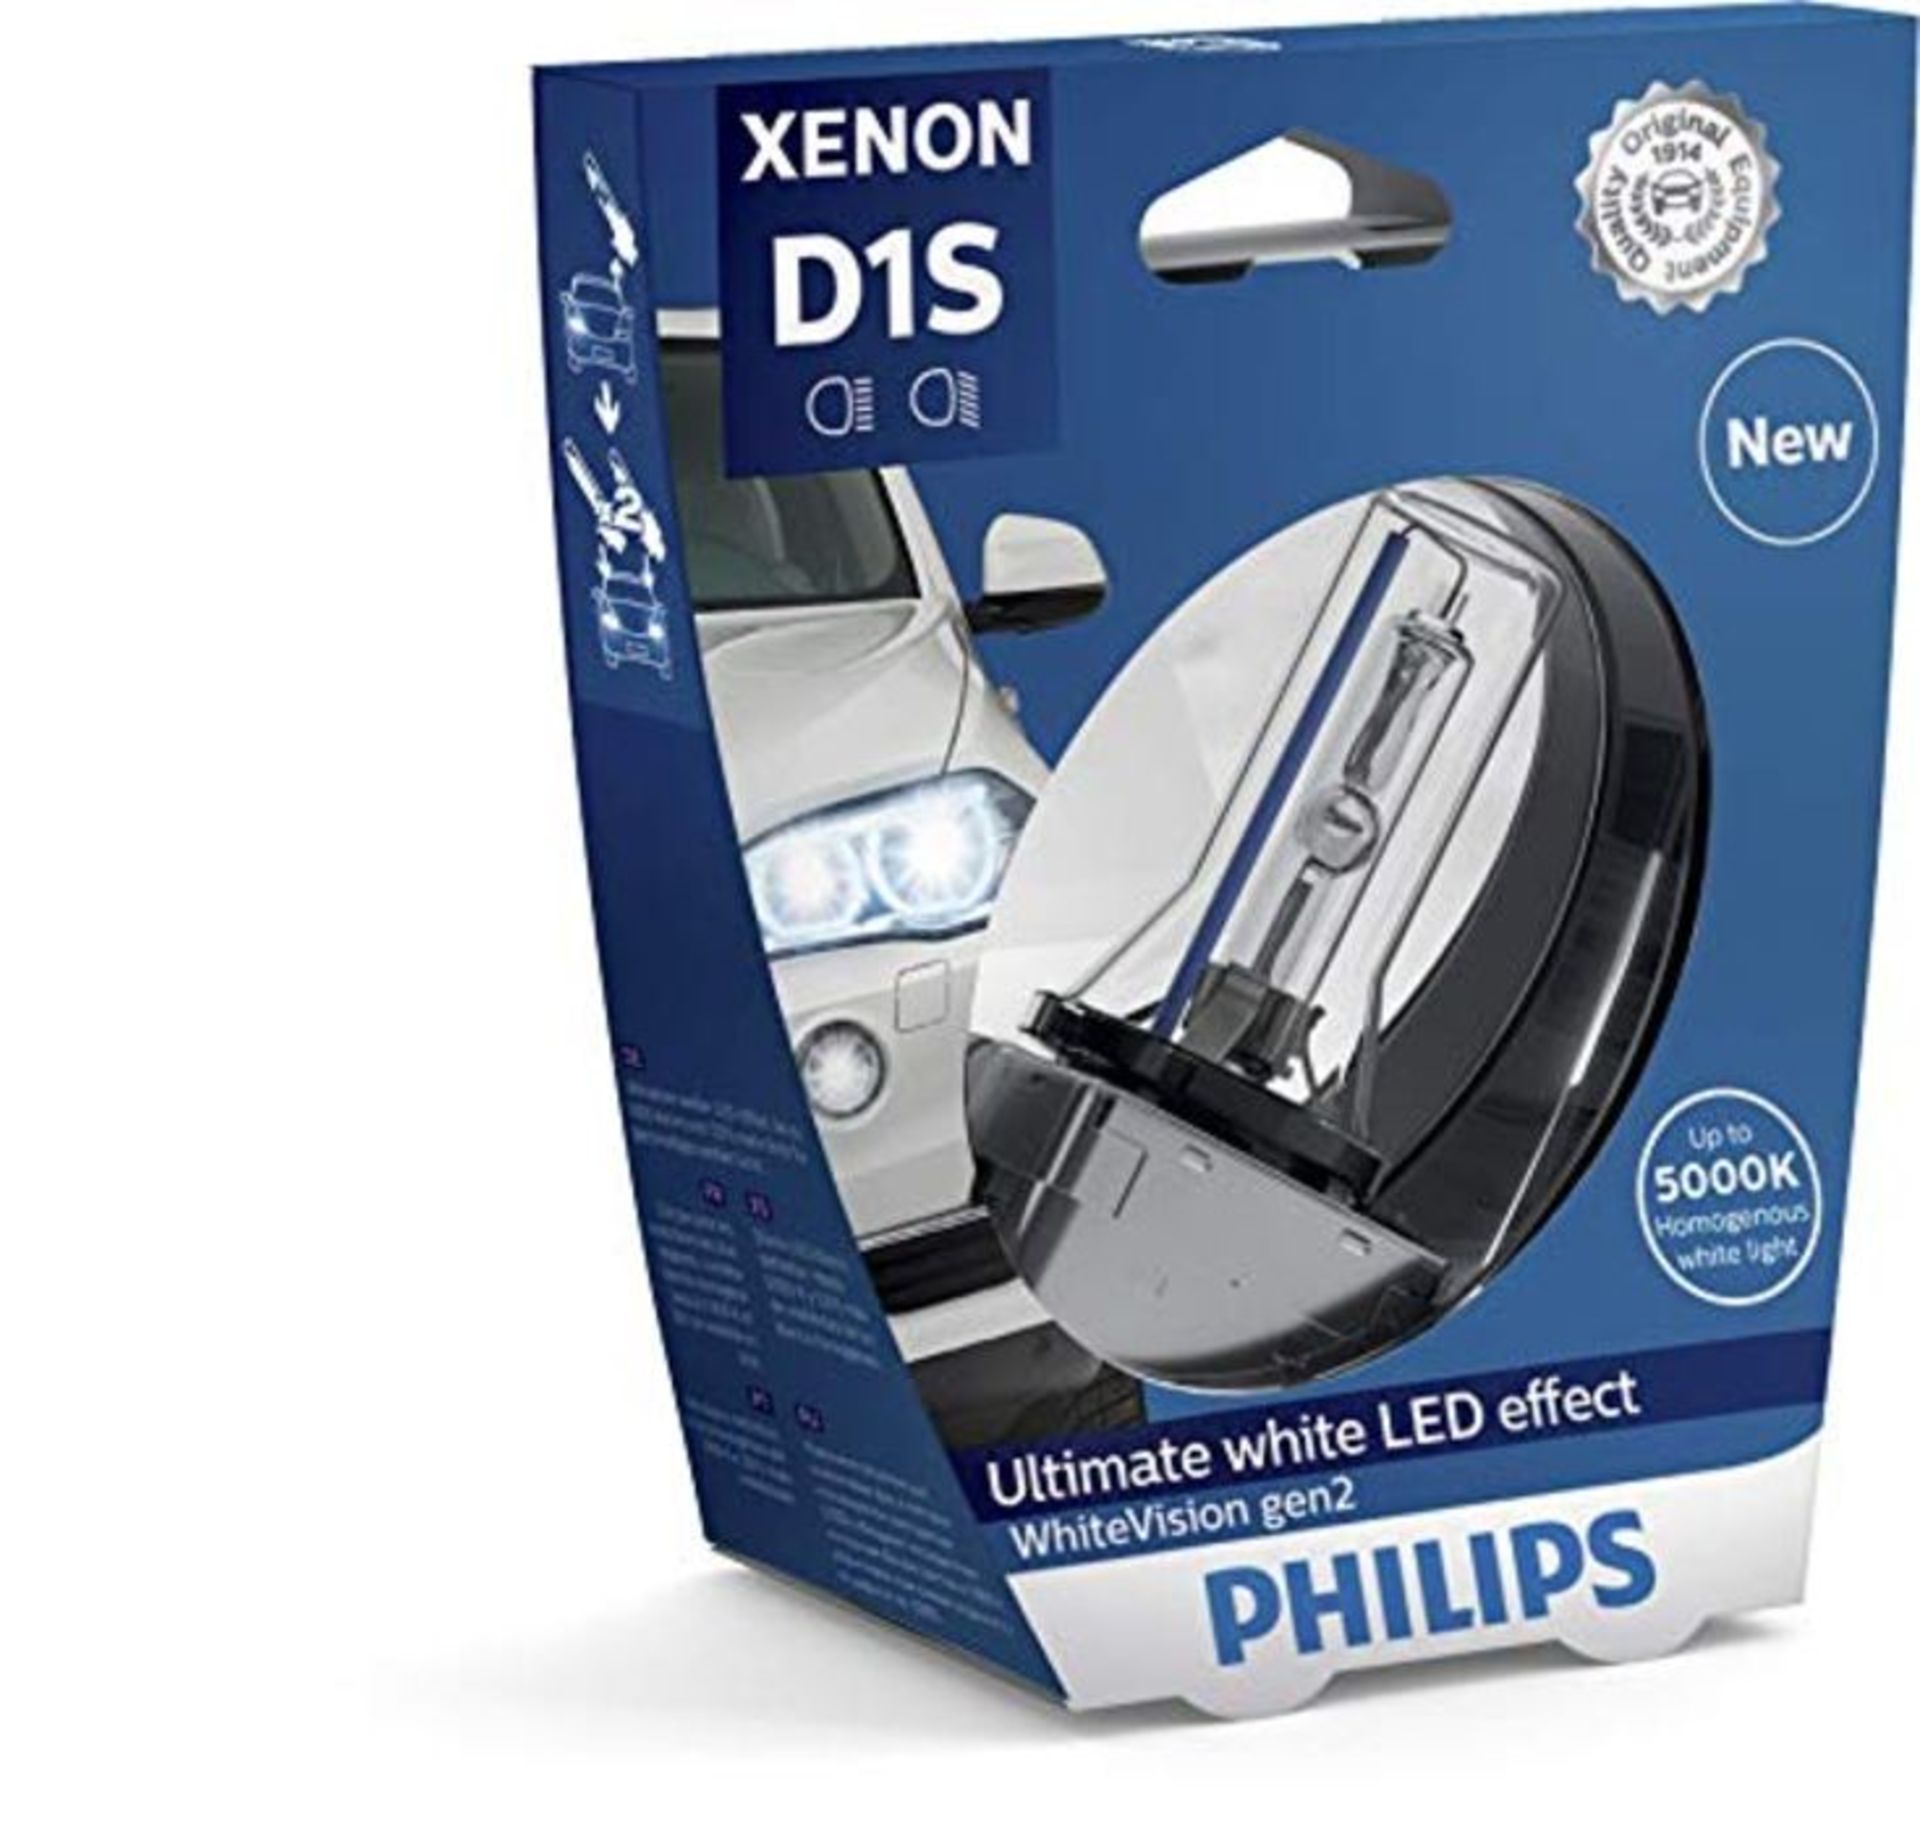 RRP £65.00 Philips 85415WHV2S1 WhiteVision gen2 Xenon headlight bulb D1S, single blister